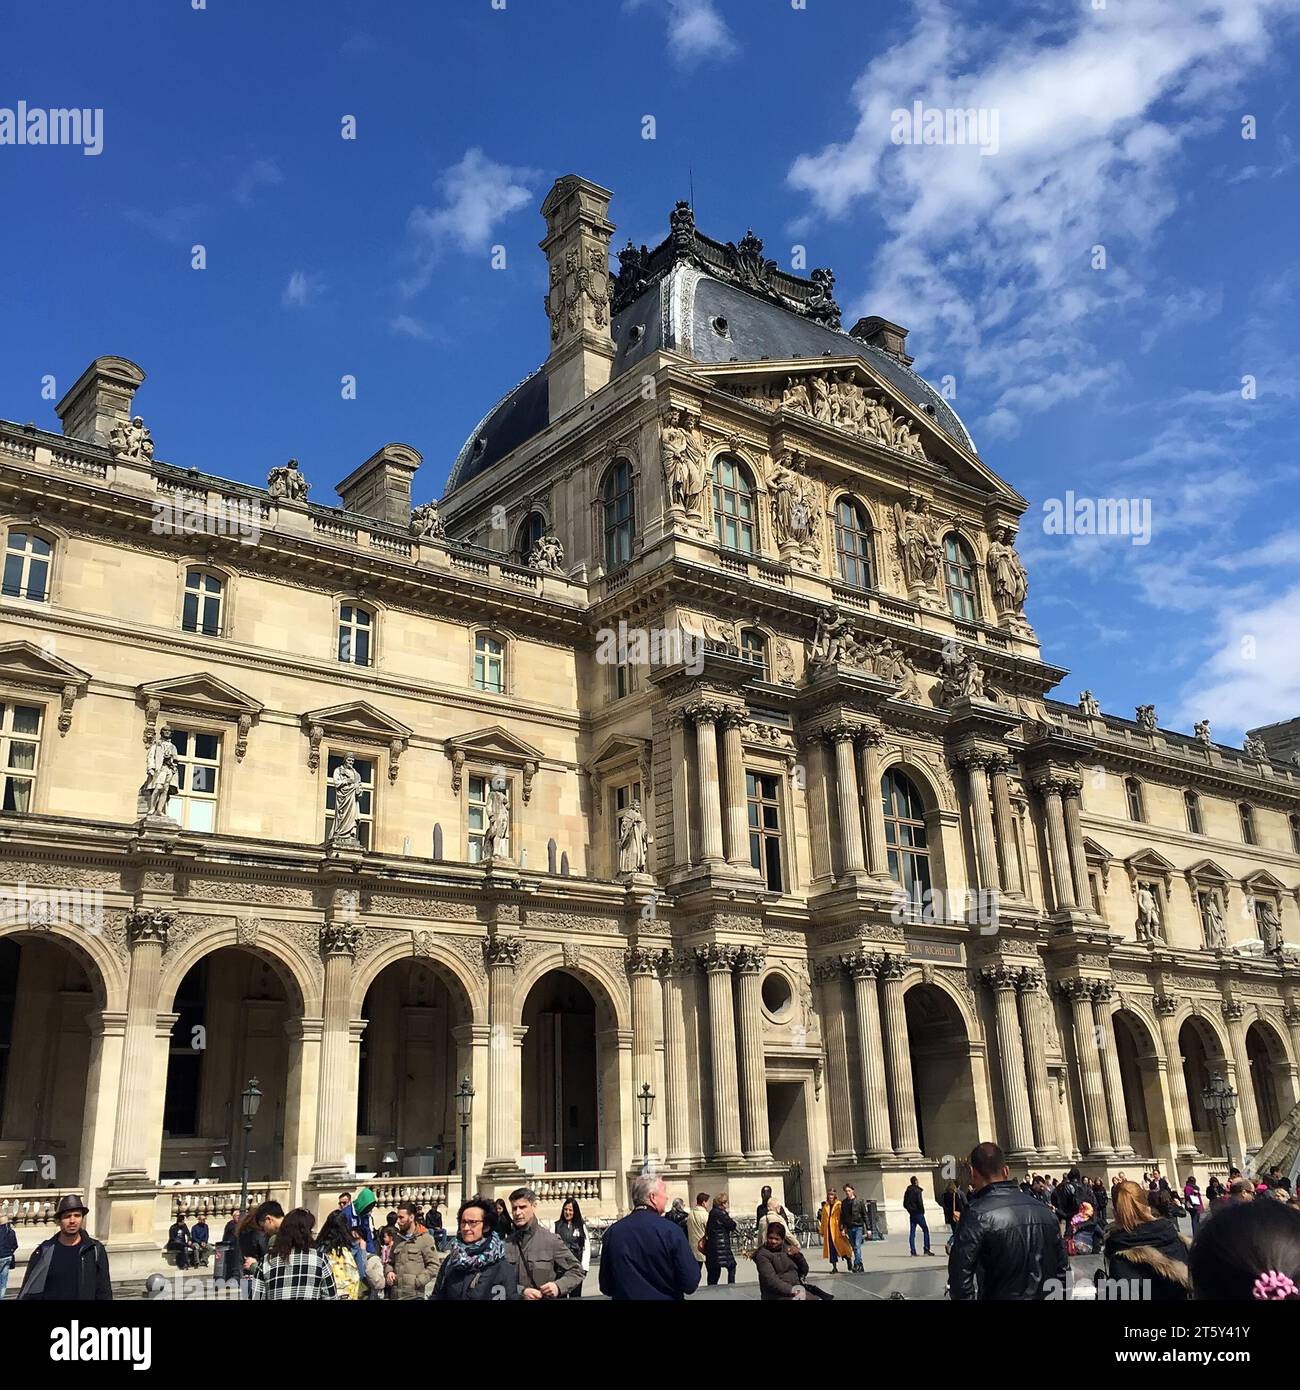 Paris - April 17, 2016: the architectural appearance of Le Louvre Museum, Paris, France Stock Photo